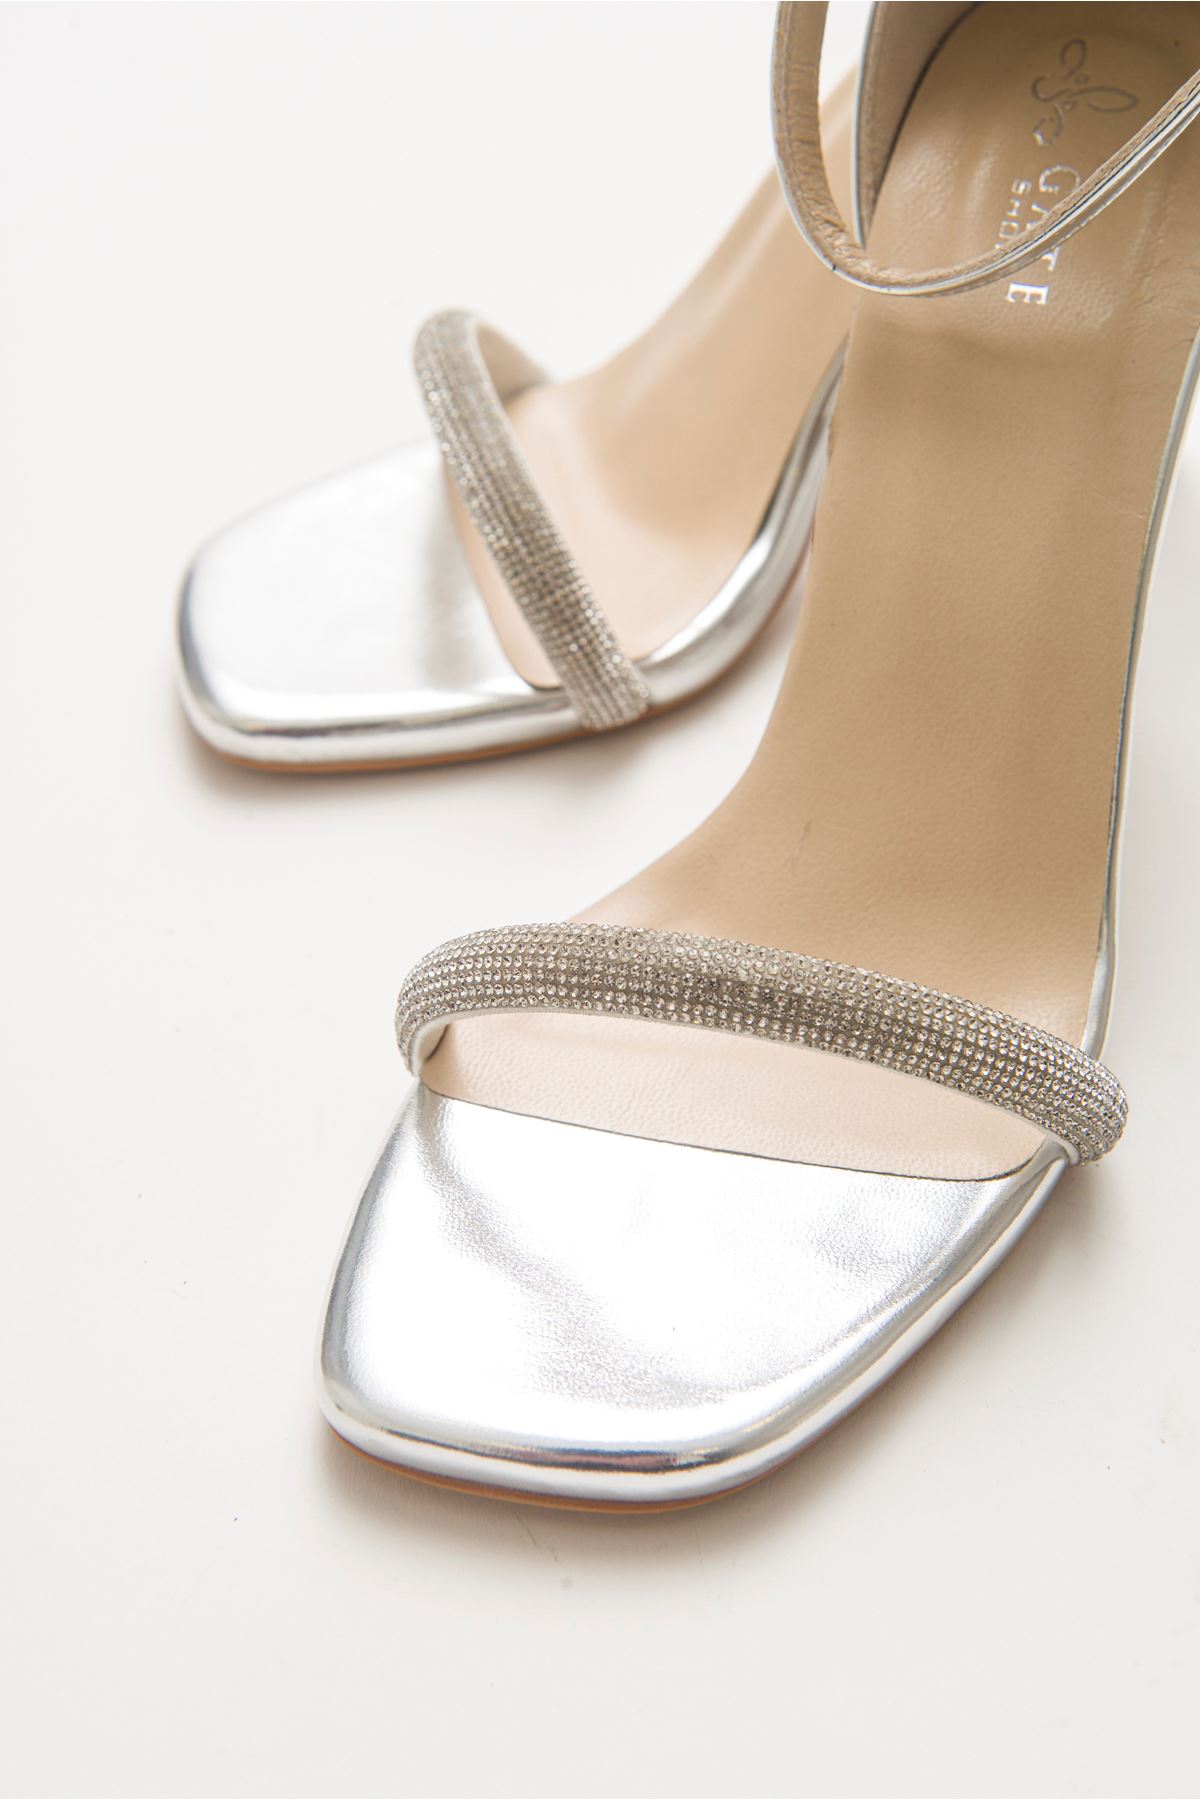 Cinzia Parlak Abiye Yüksek Topuk Taşlı Bilekten Bağlamalı Kadın Gece Ayakkabısı Gate Shoes-Gümüş